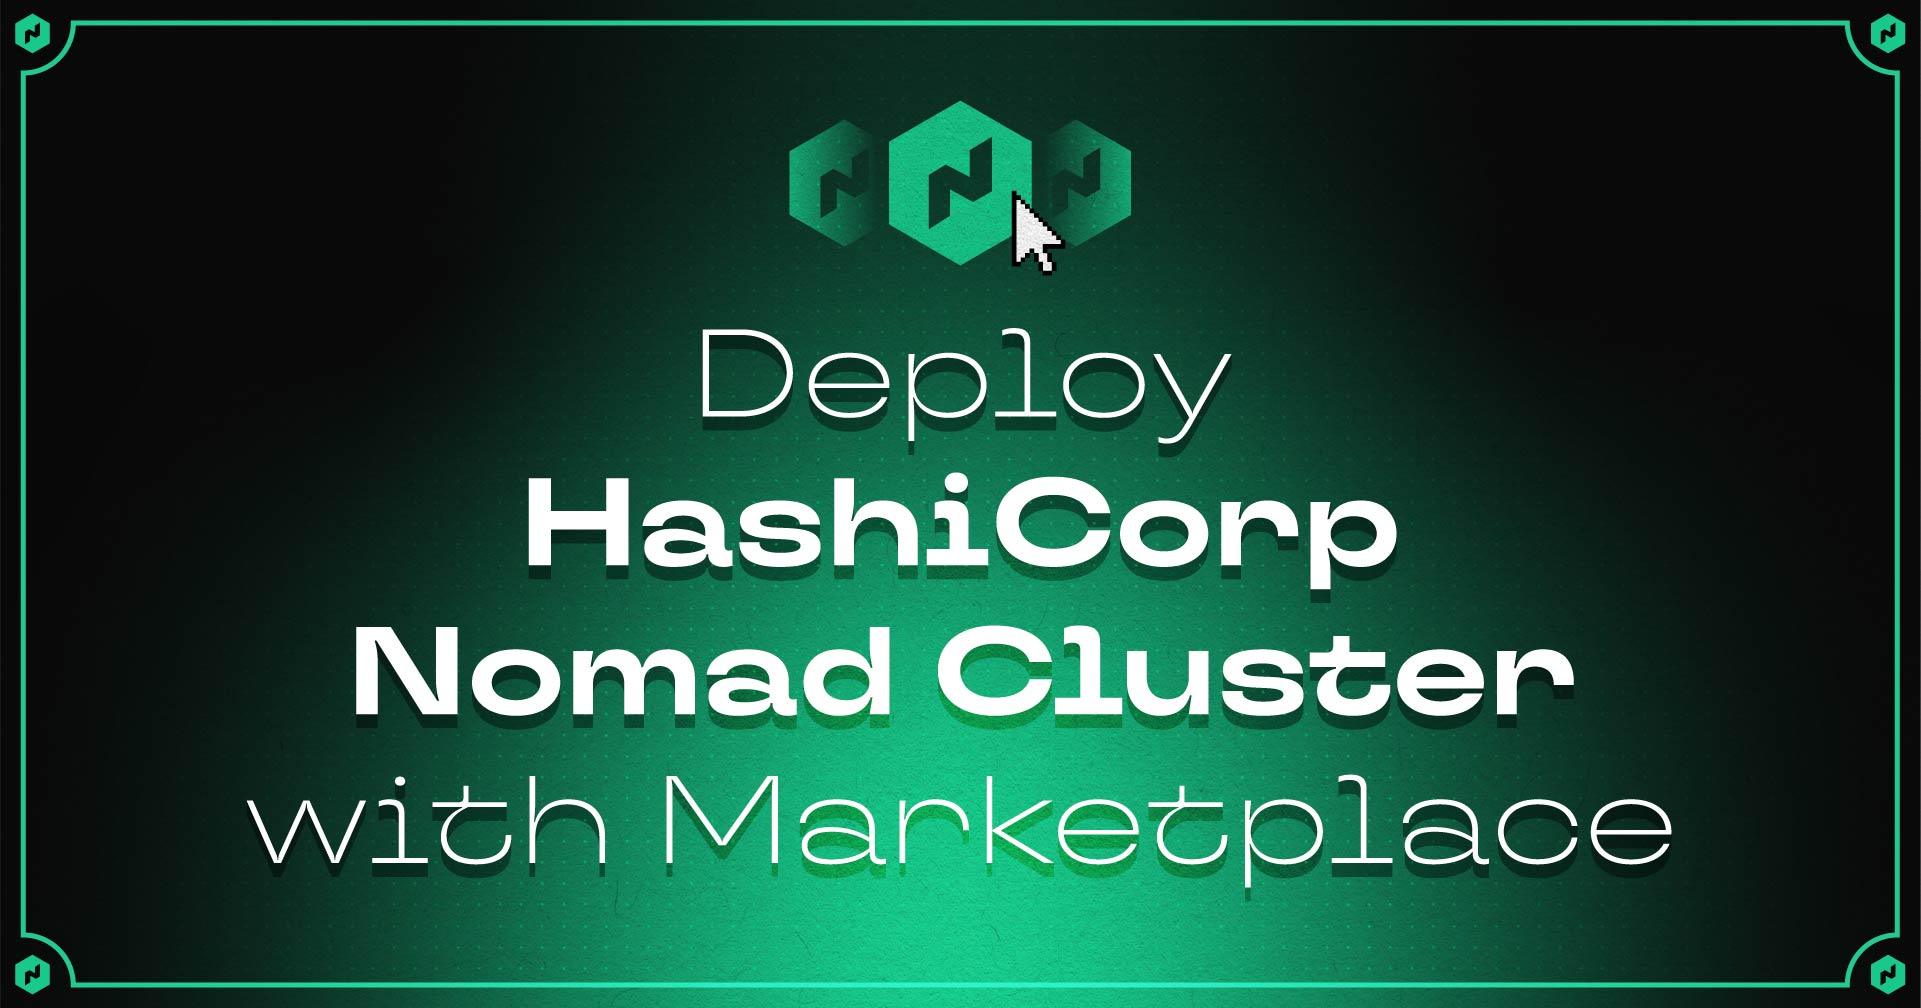 ¡Despliegue HashiCorp Nomad Cluster con Marketplace!